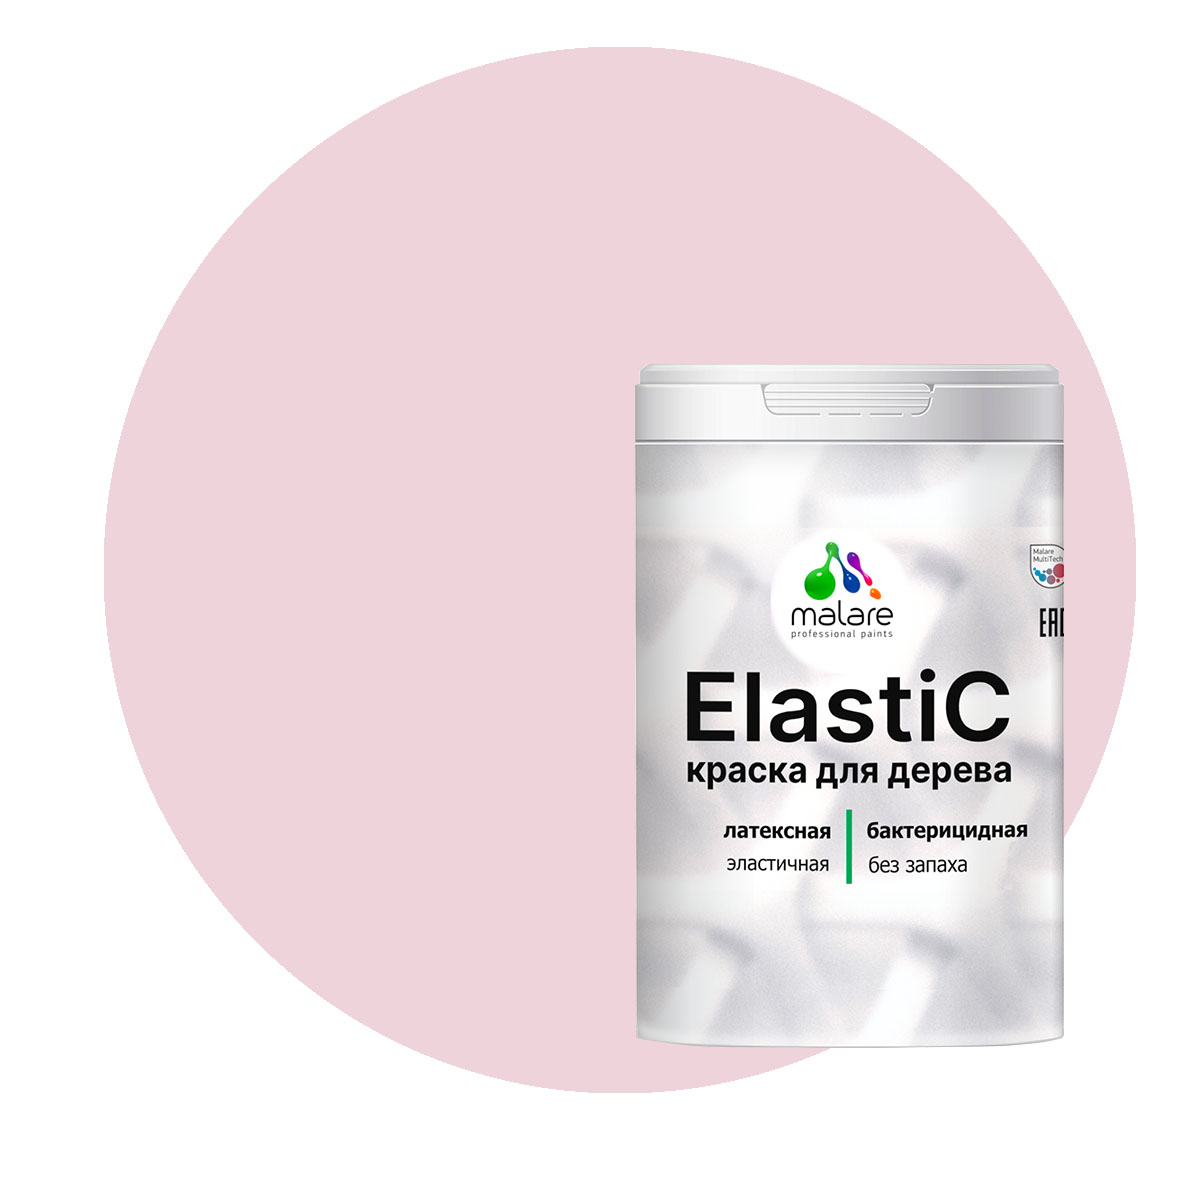 Краска Malare Elastic для деревянных поверхностей, бледно-розовый, 1 кг. краска malare для окон и дверей деревянных поверхностей бледно розовый 10 кг